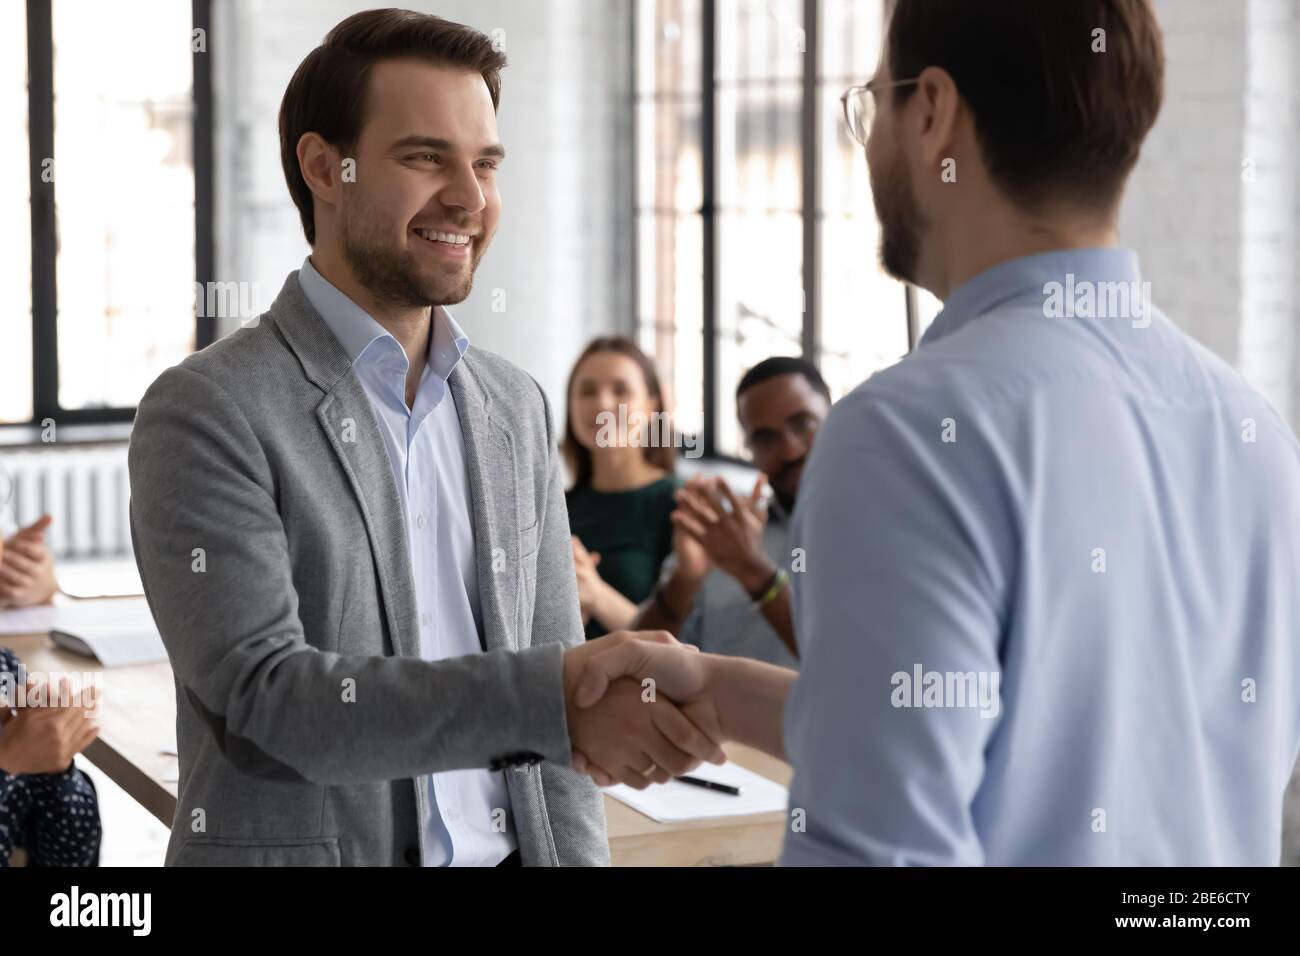 Der männliche Chef schüttelt die Hand des Mitarbeiters, der zur Jobförderung gratuliert Stockfoto